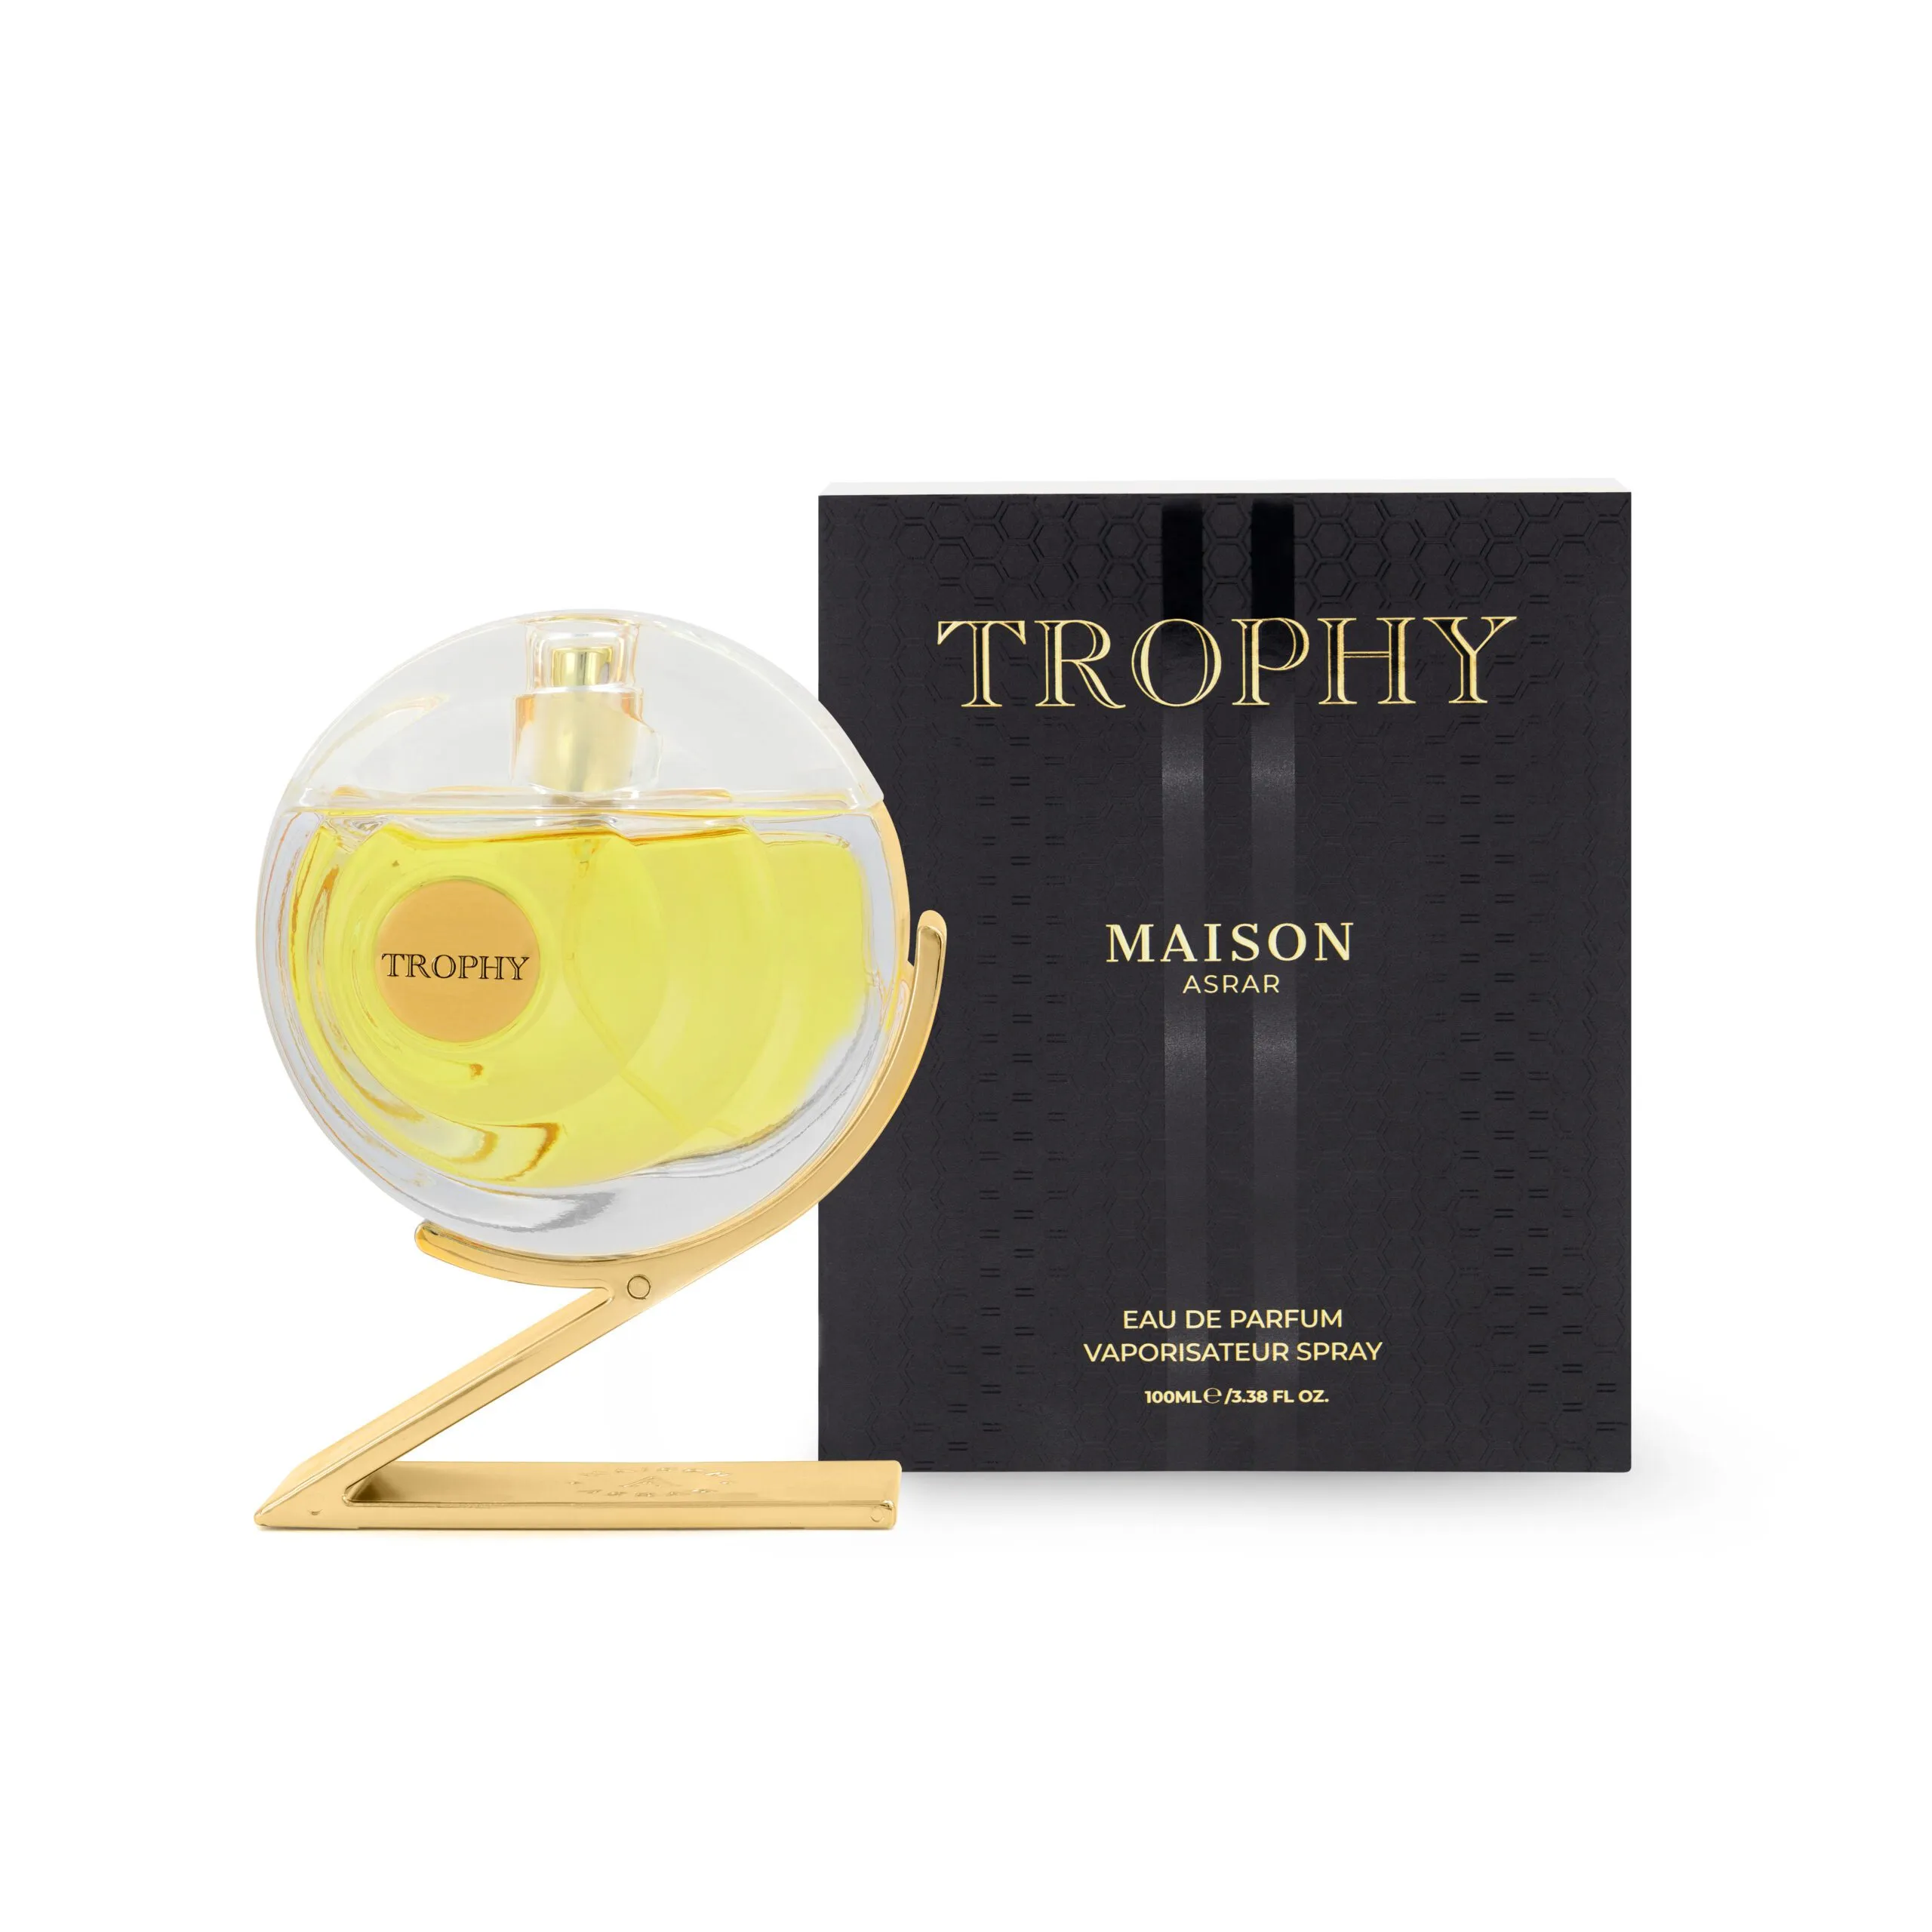 Trophy – Eau De Parfum